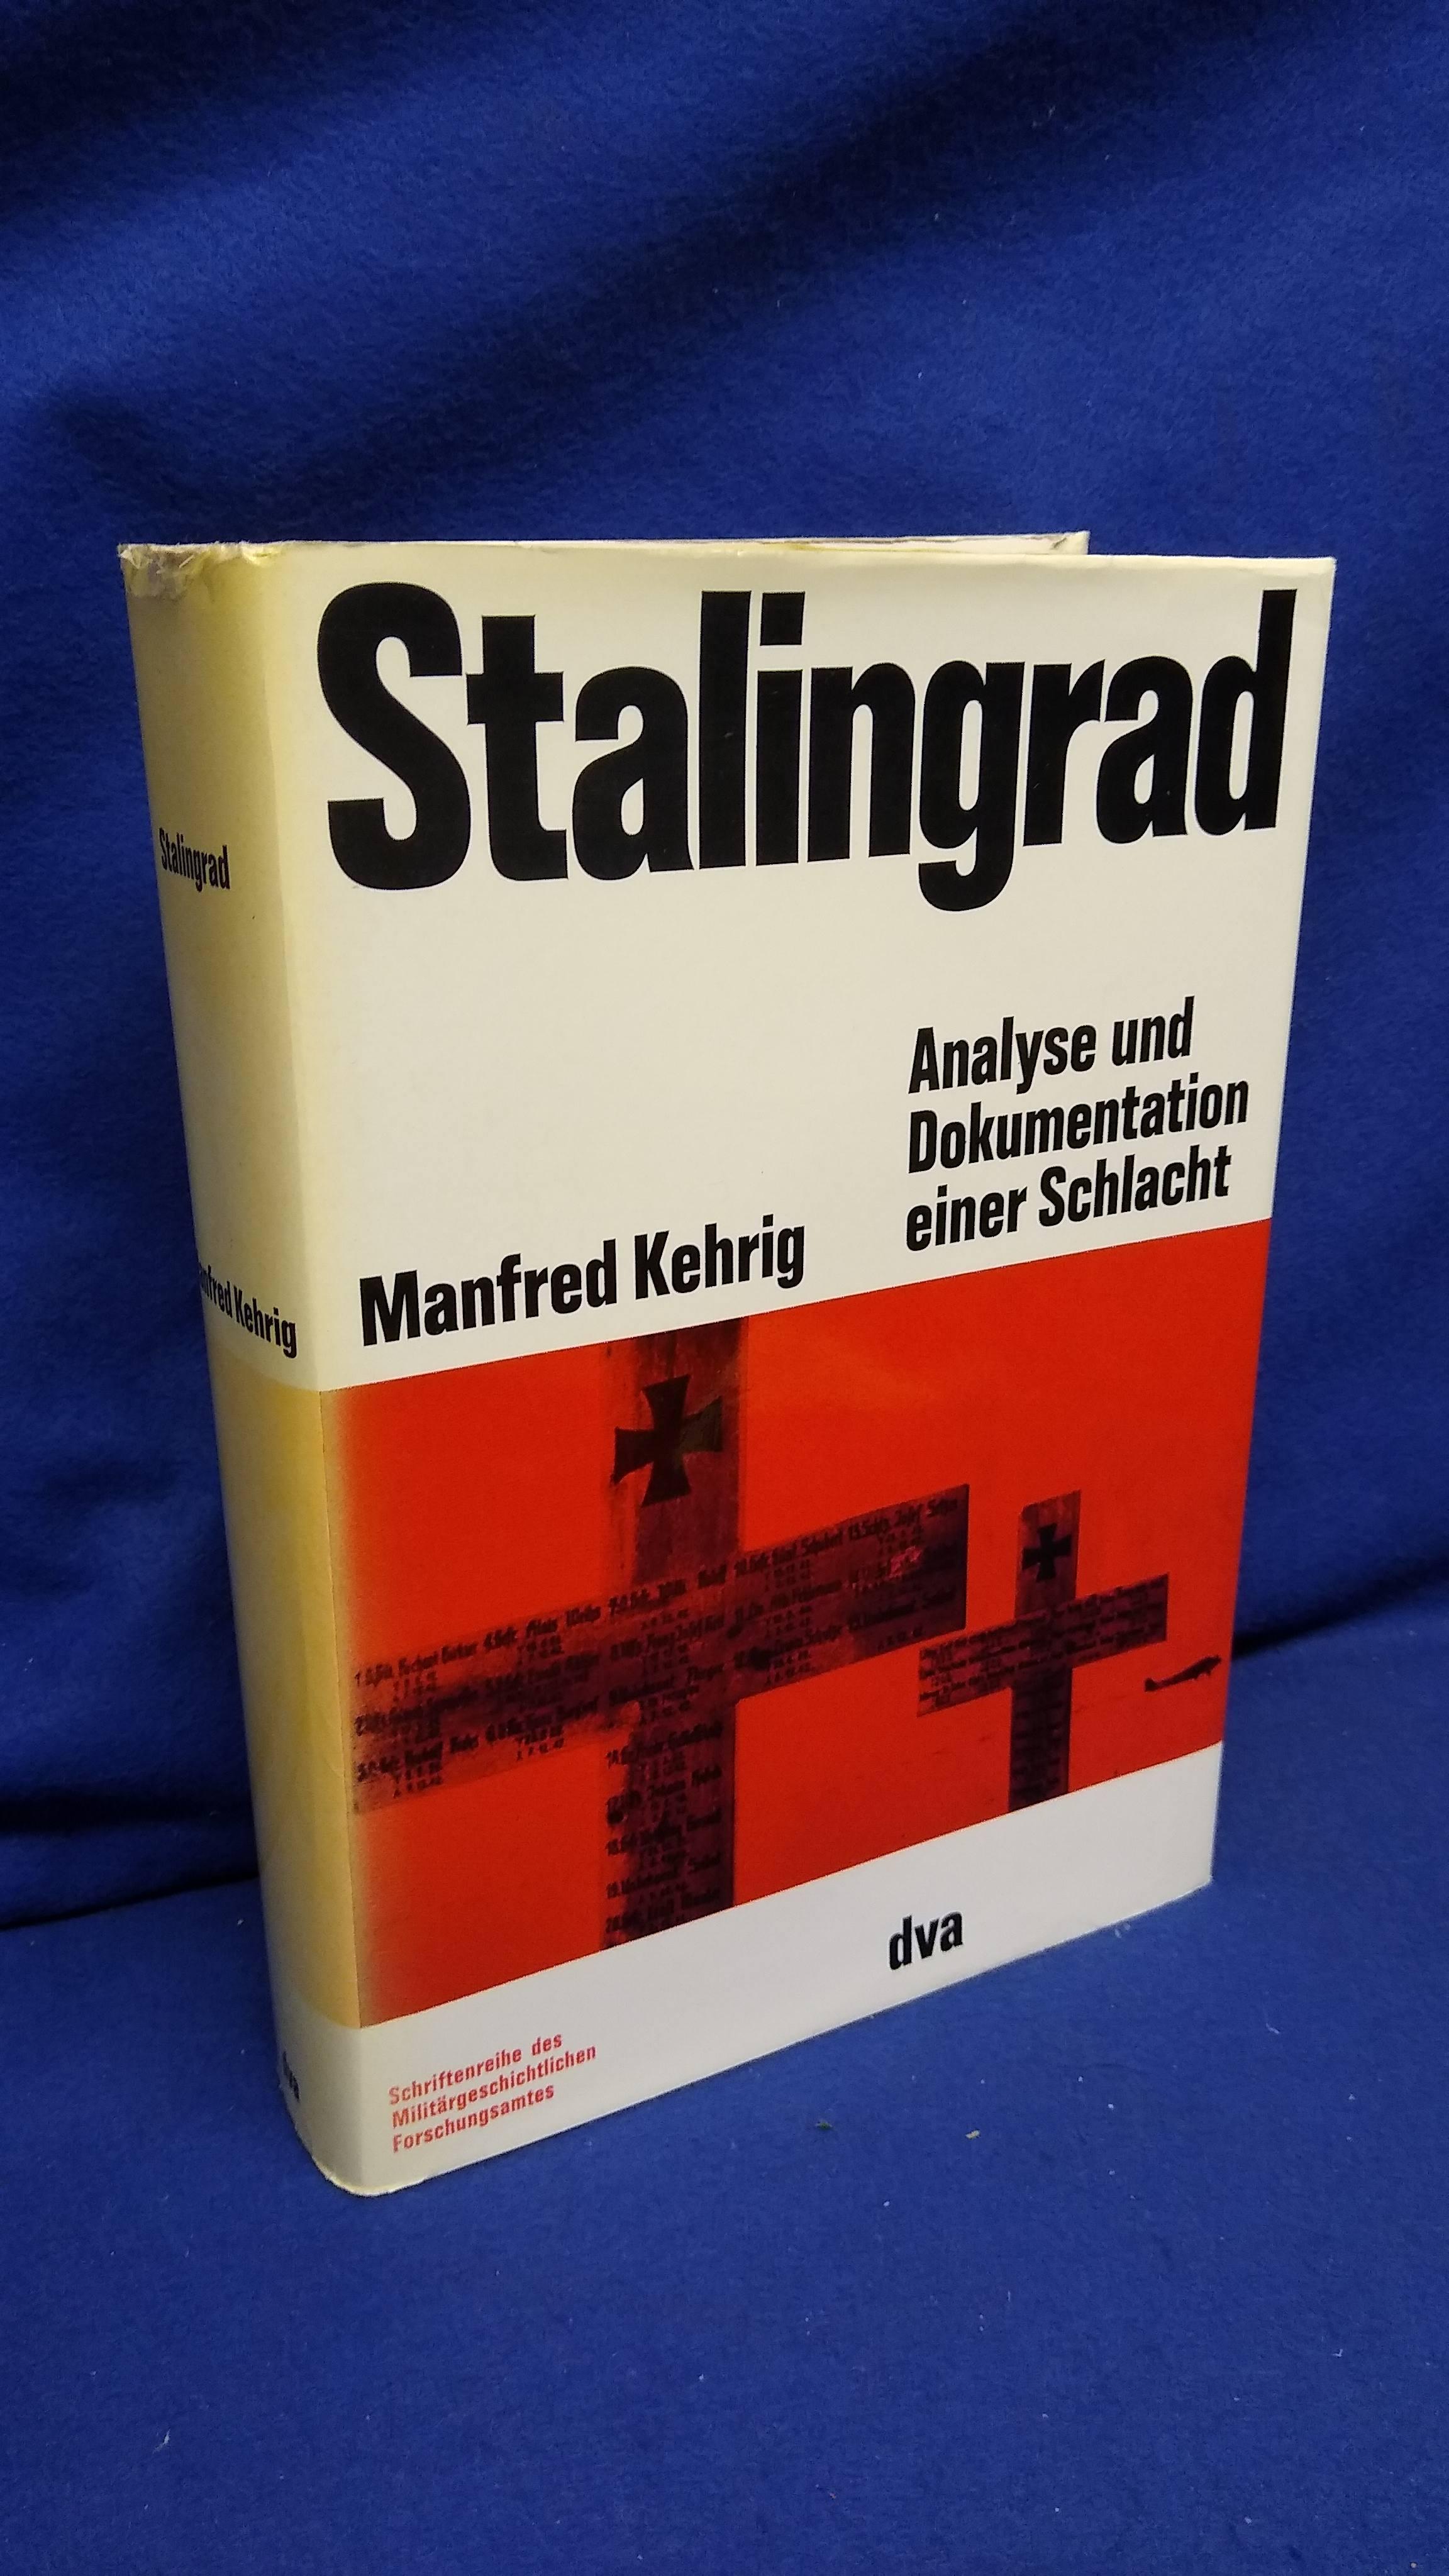 Beiträge zur Militär- und Kriegsgeschichte Band 15: Stalingrad. Analyse und Dokumentation einer Schlacht.